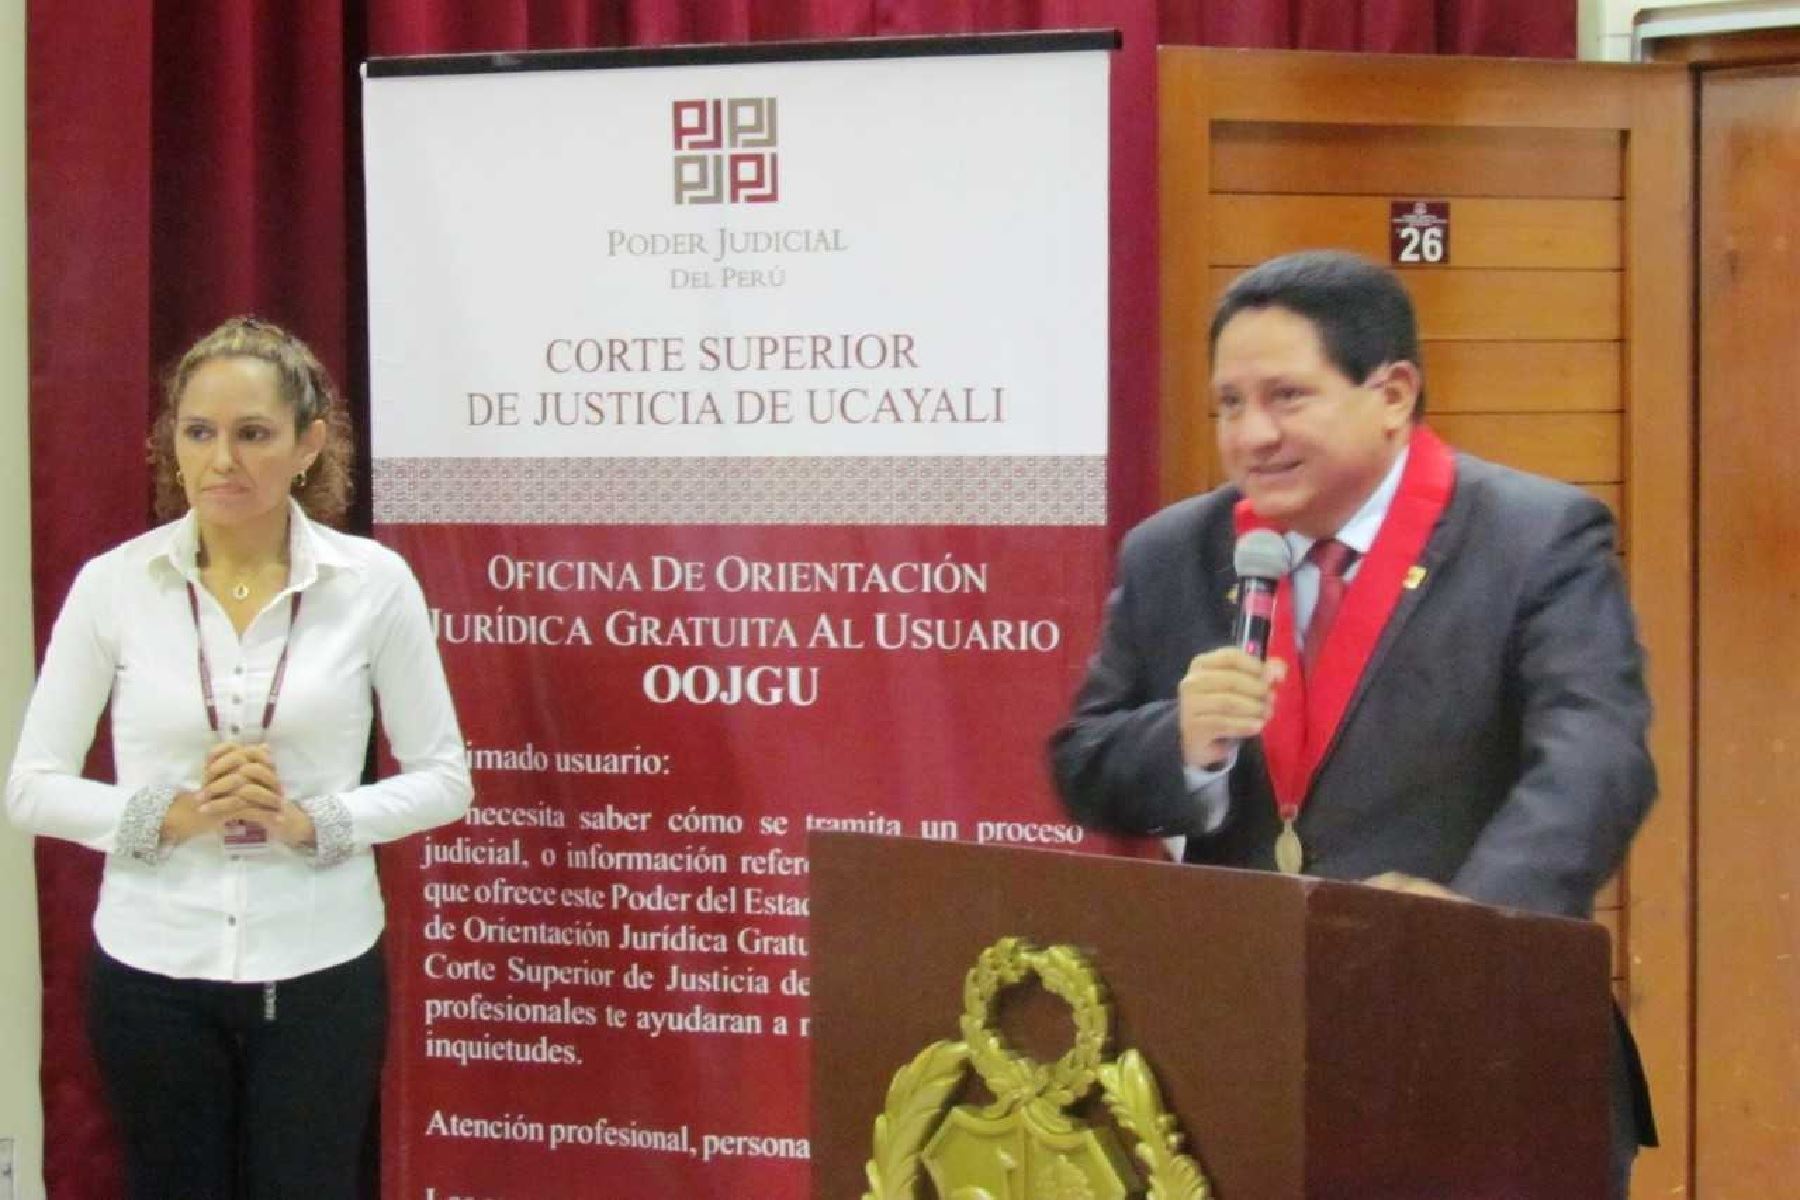 En la OOJGU personal capacitado ofrece a los usuarios ucayalinos información básica sobre sus derechos, los servicios que ofrece el Poder Judicial, con acceso directo, oportuno y fácil.